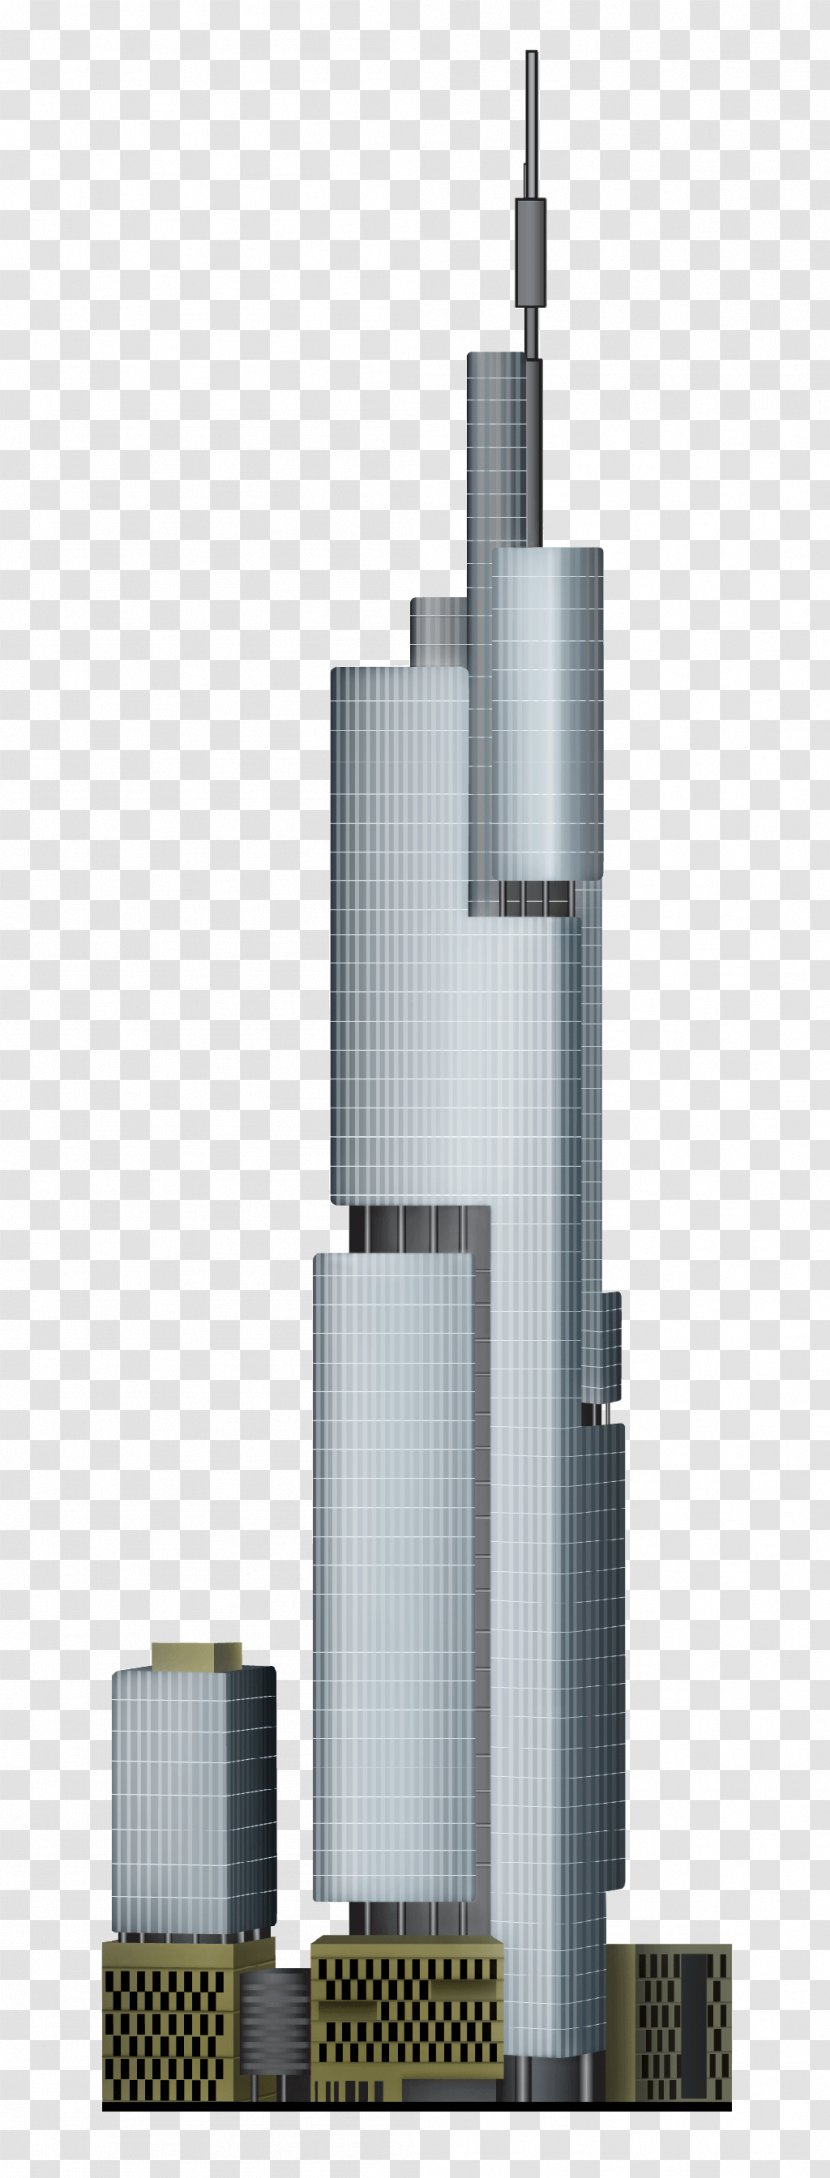 Skyscraper Facade - Building Transparent PNG